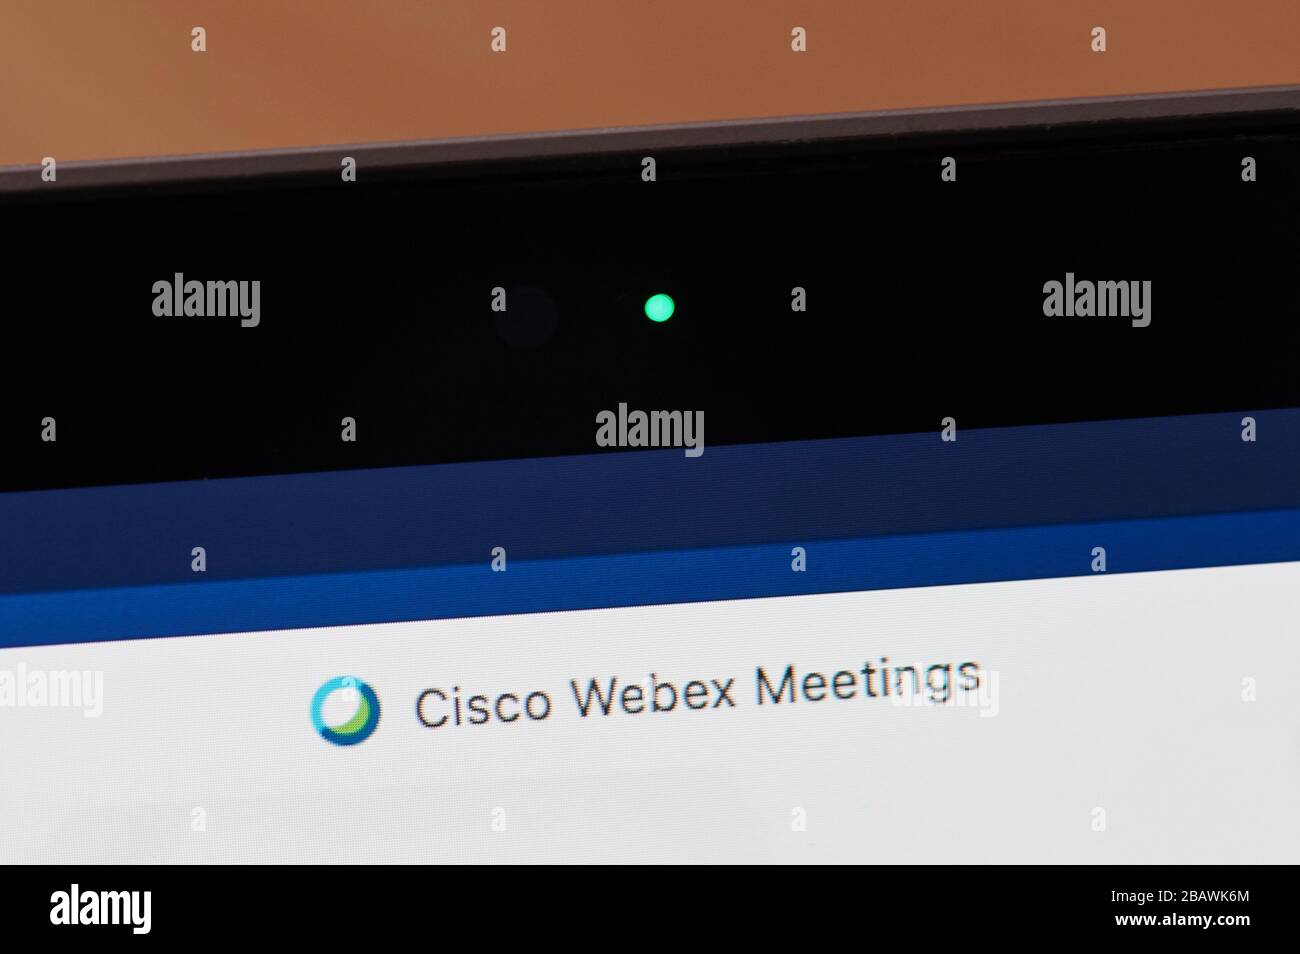 New York, USA - 29. März 2020:verwenden der Kamera im Cisco webex Meeting Programmsymbol auf dem Bildschirm Nahansicht Stockfoto